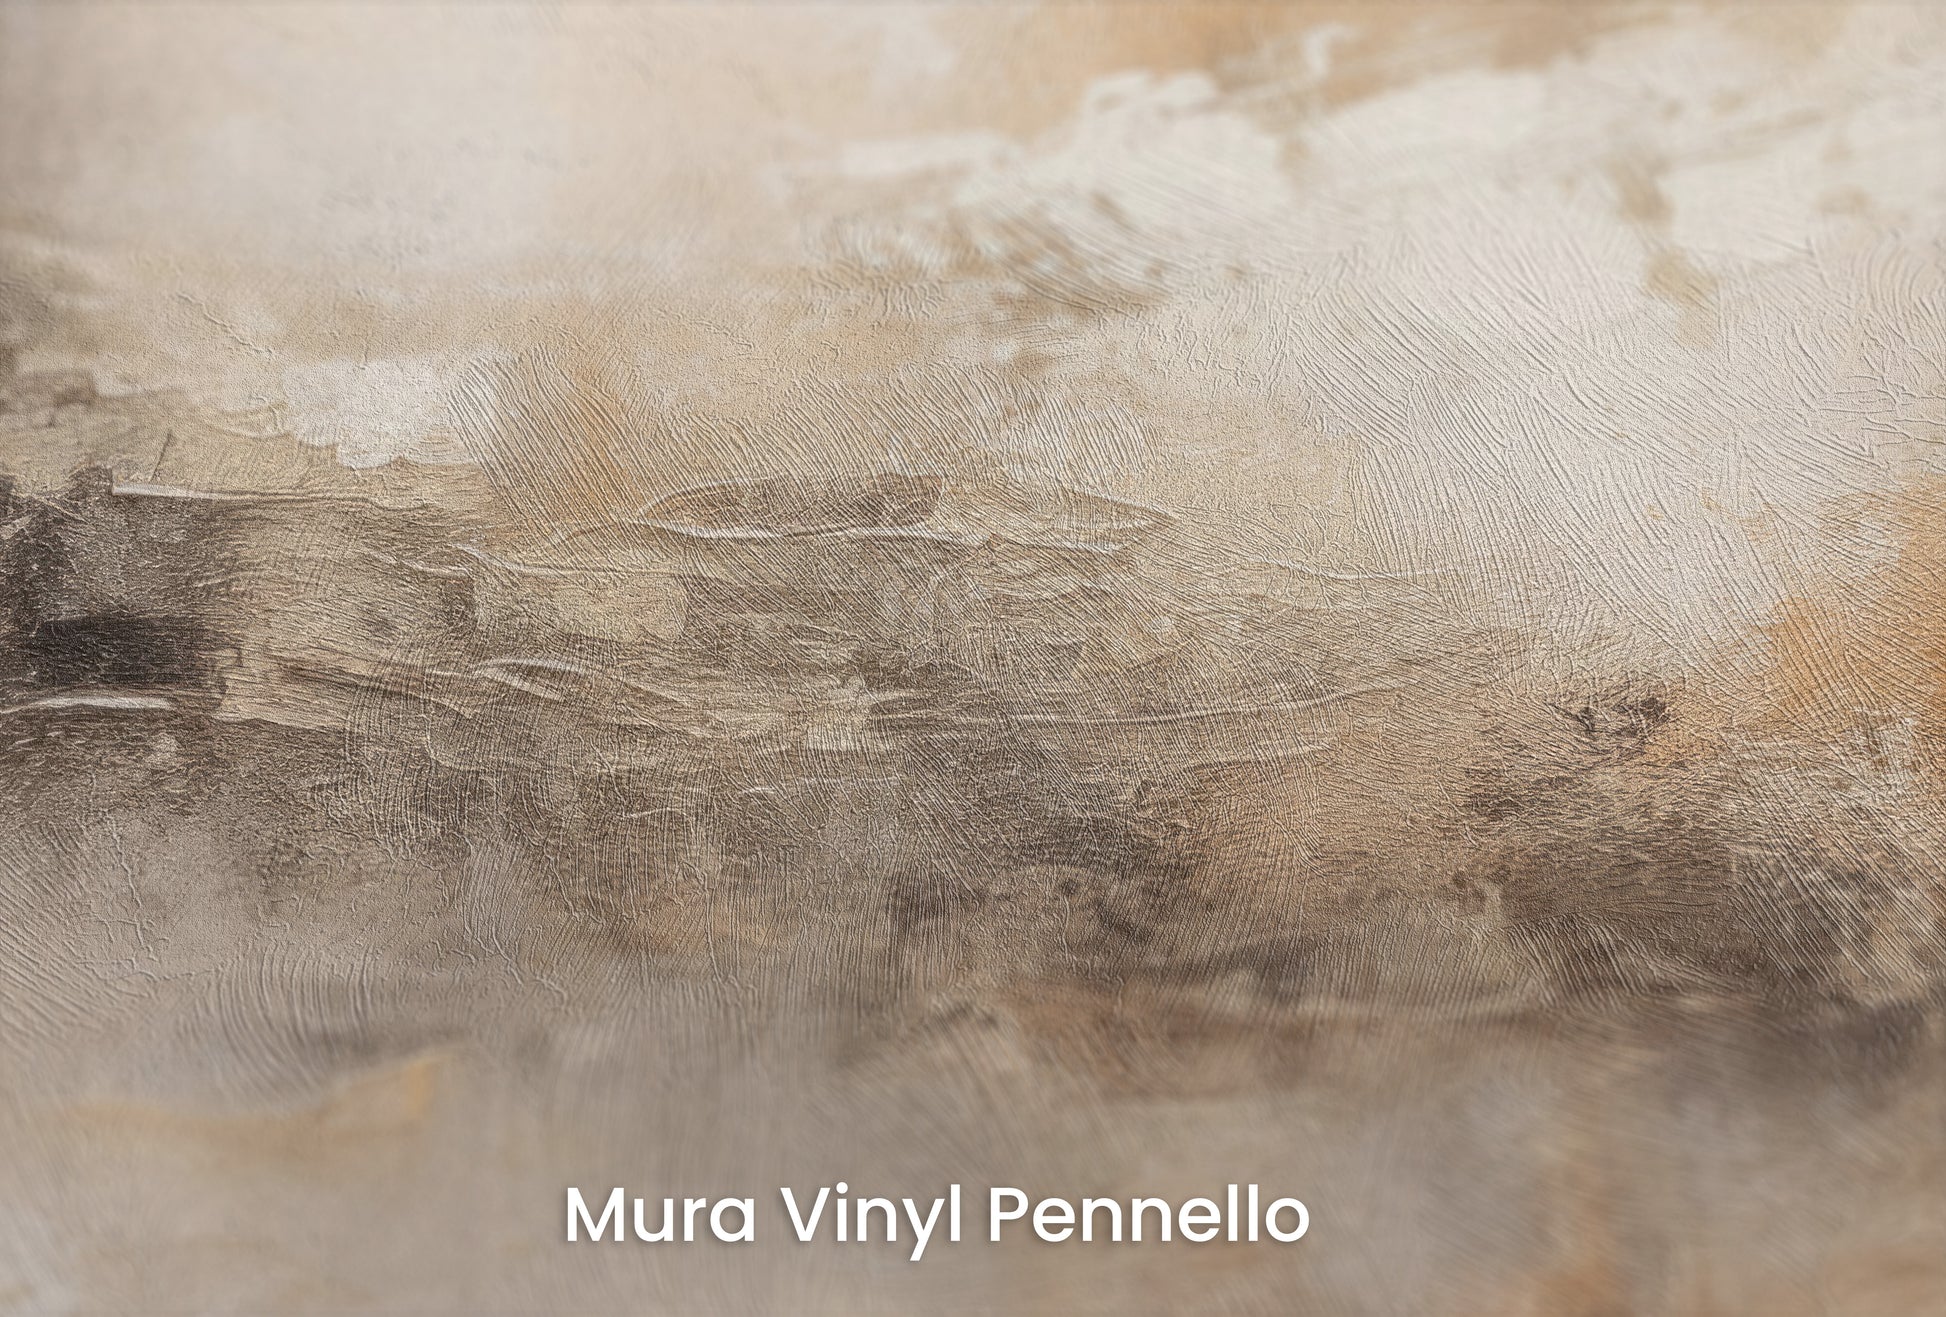 Zbliżenie na artystyczną fototapetę o nazwie ECHOES OF DAWN na podłożu Mura Vinyl Pennello - faktura pociągnięć pędzla malarskiego.